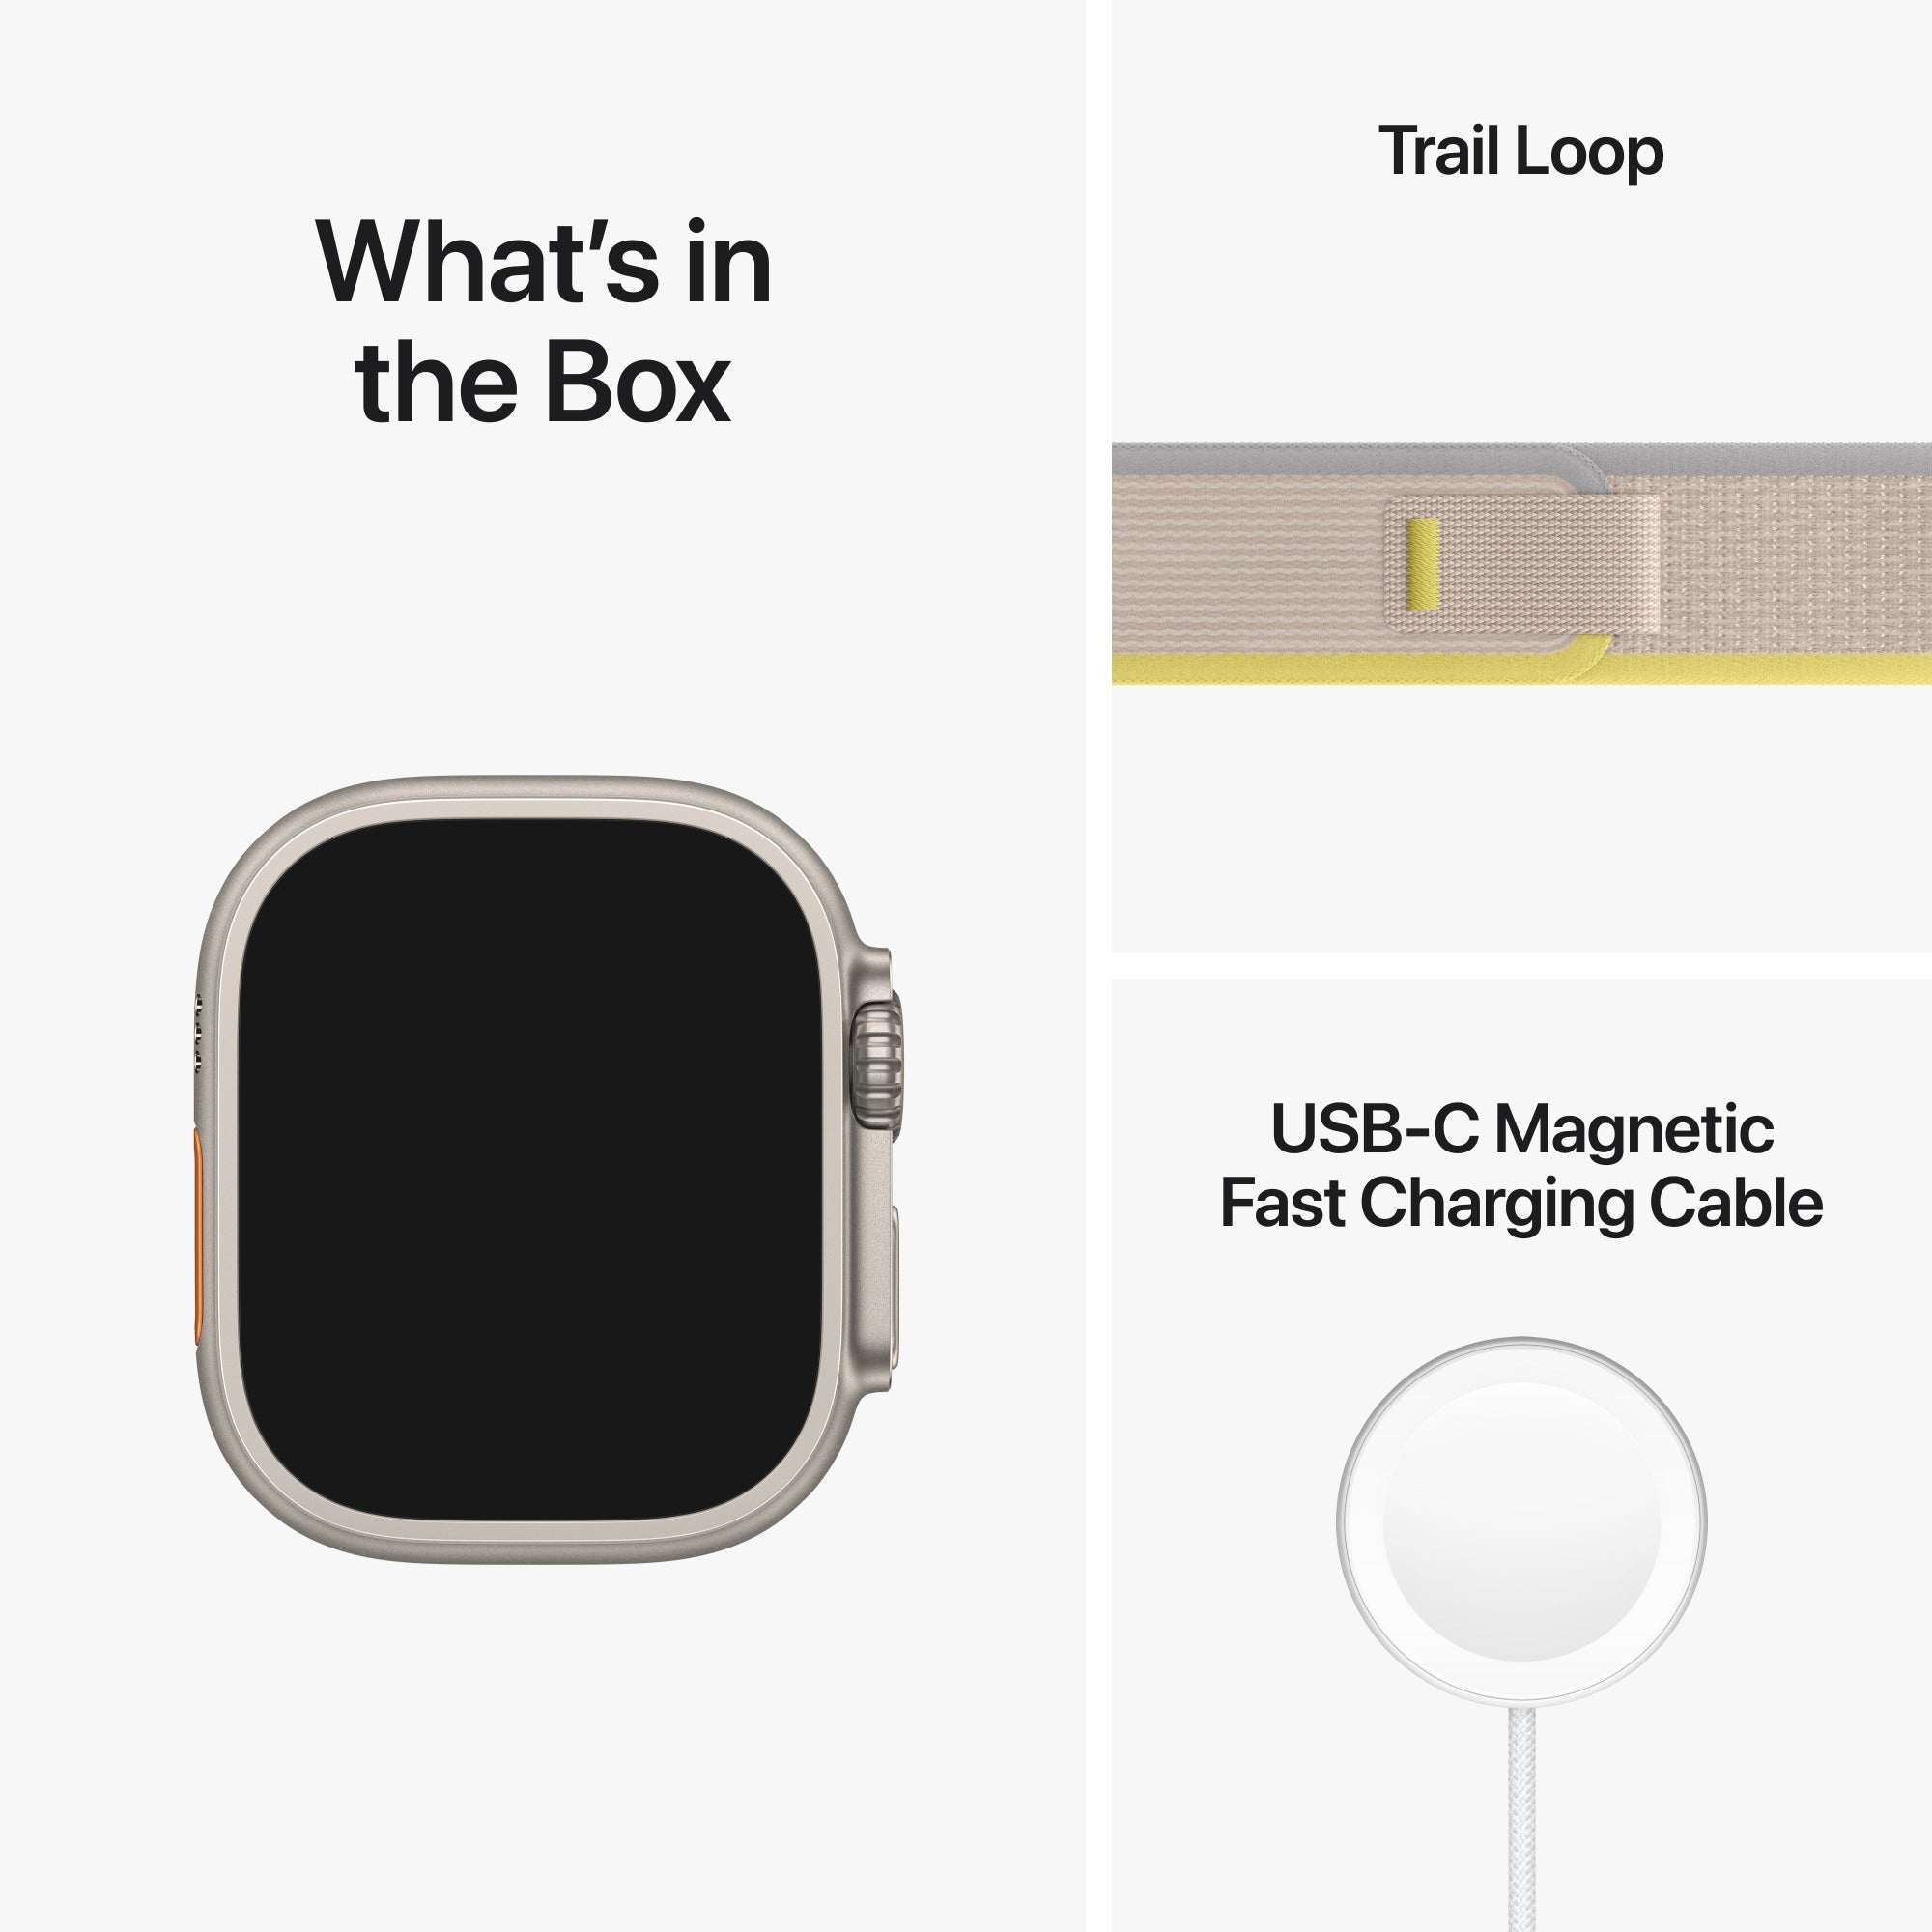 Apple Watch Ultra Trail Loop - Yellow/Beige